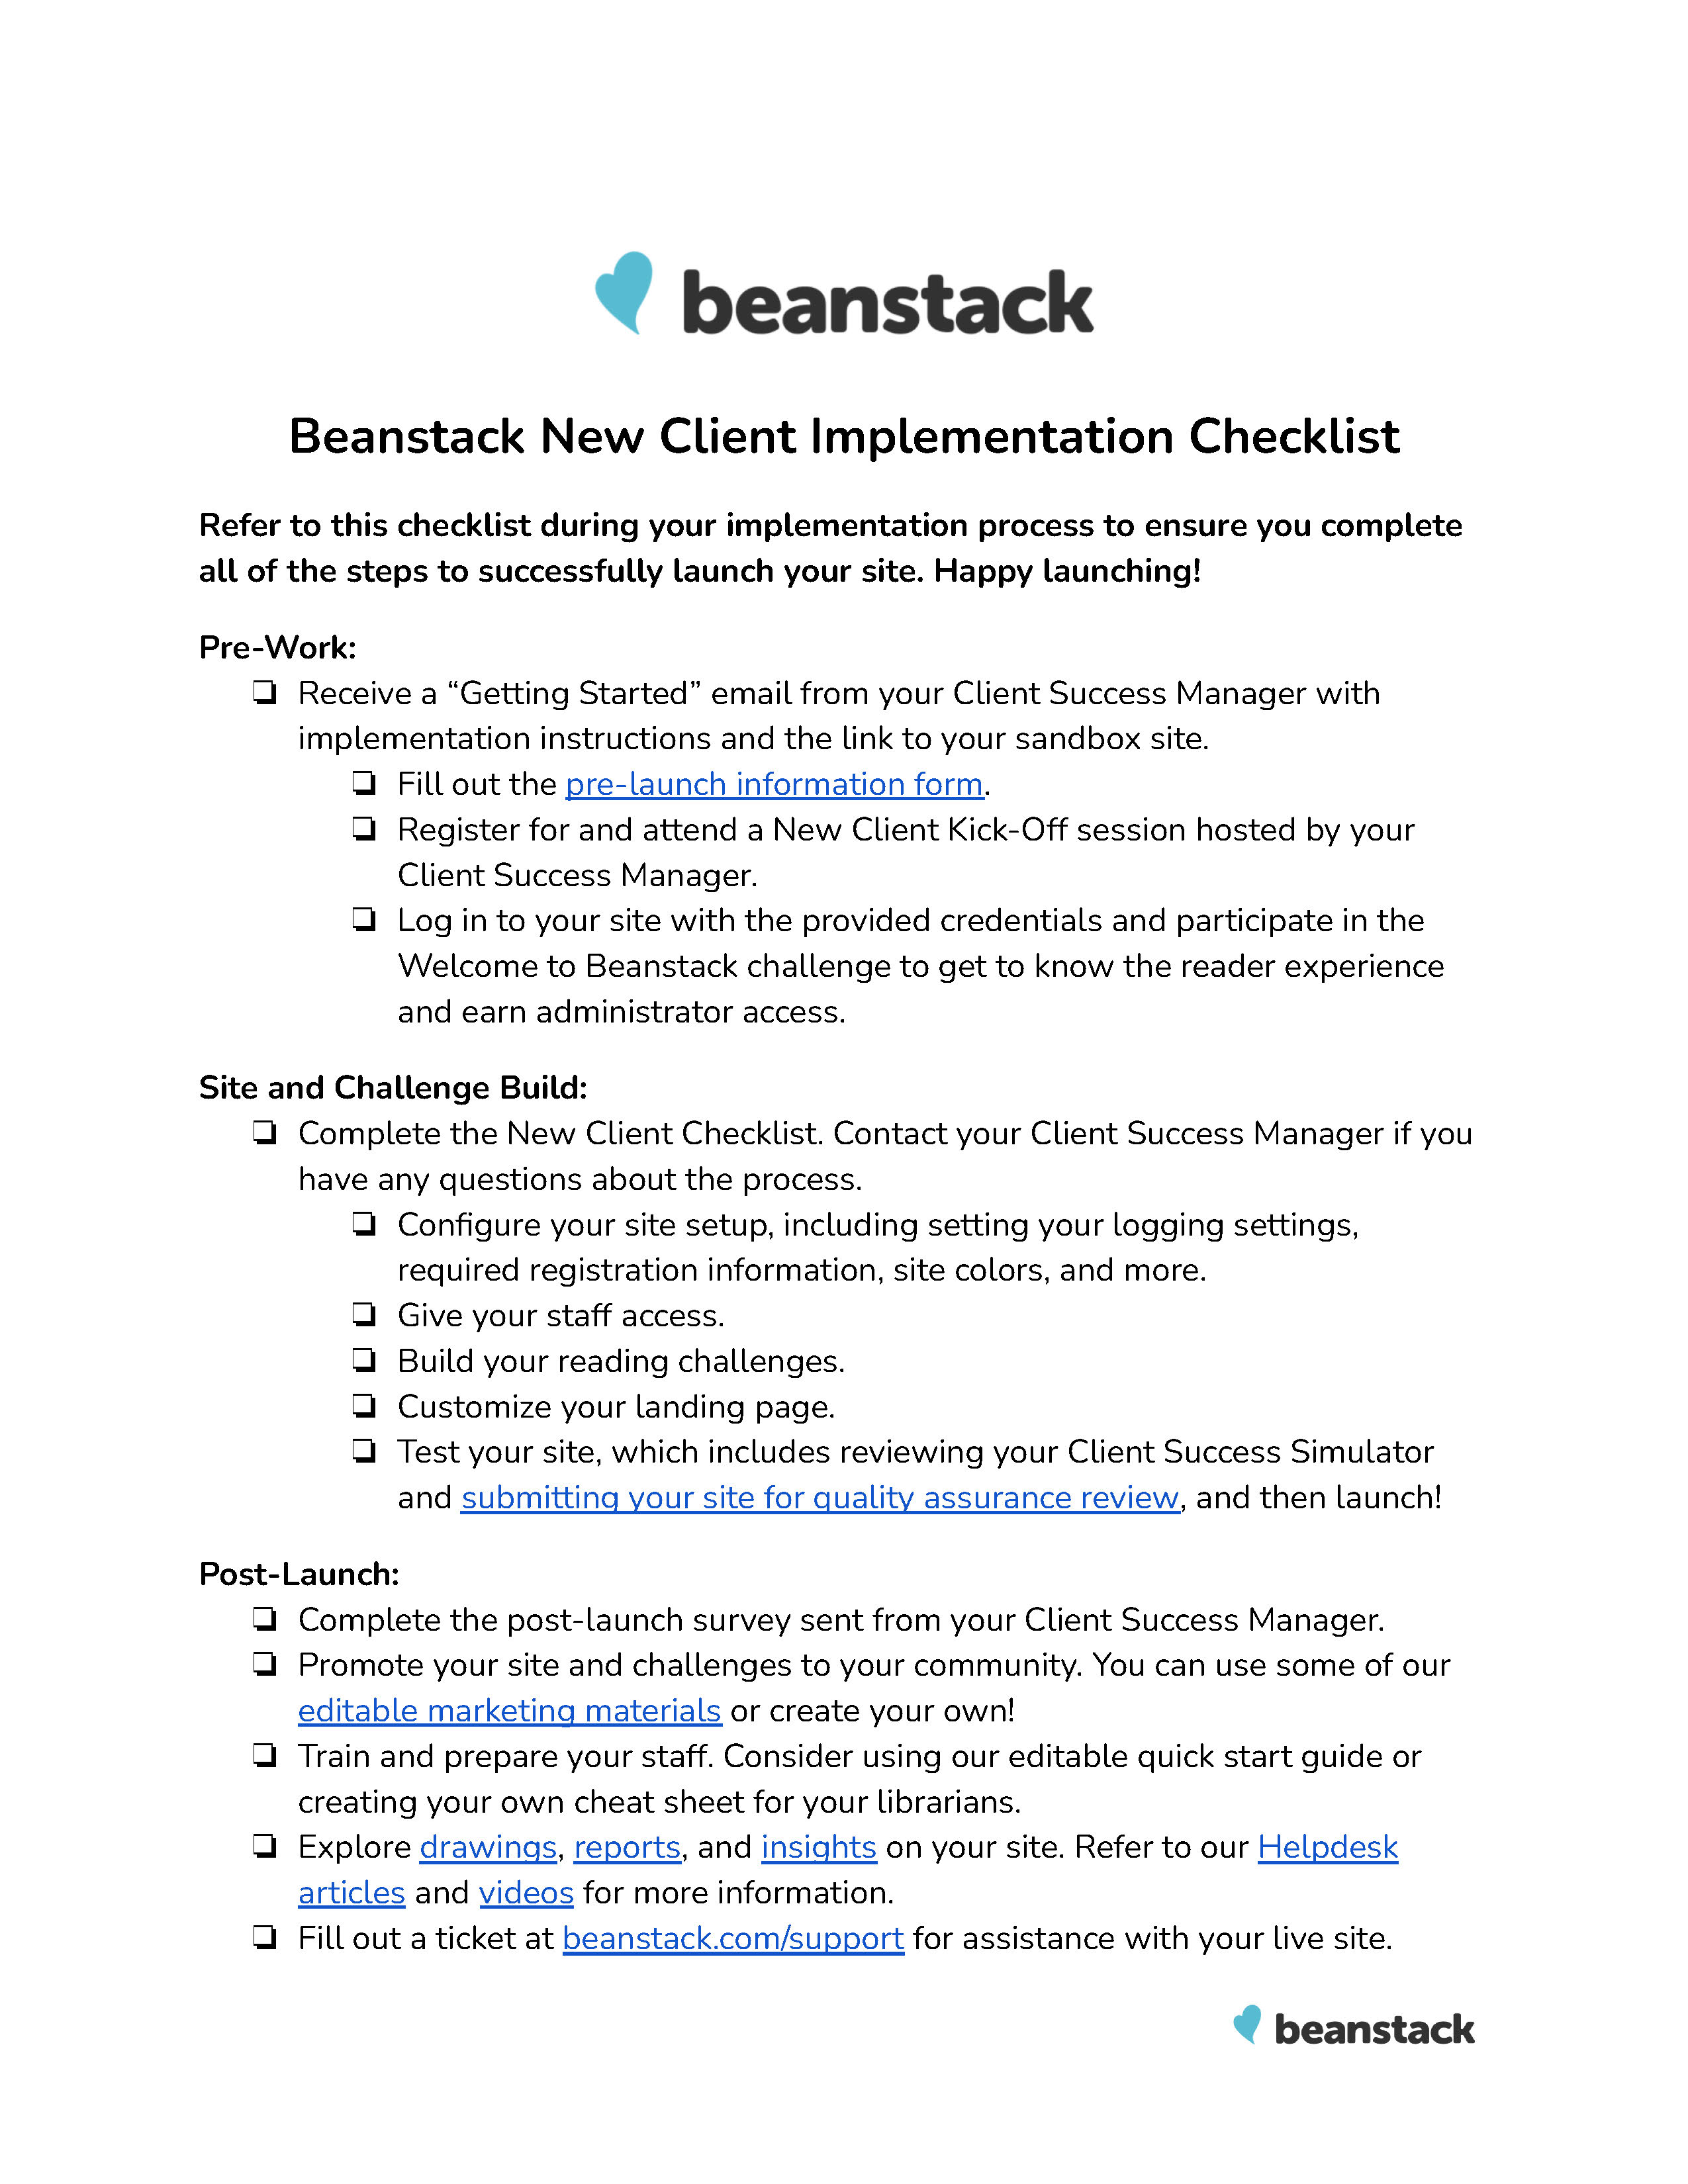 Beanstack_New_Client_Implementation_Checklist.jpg